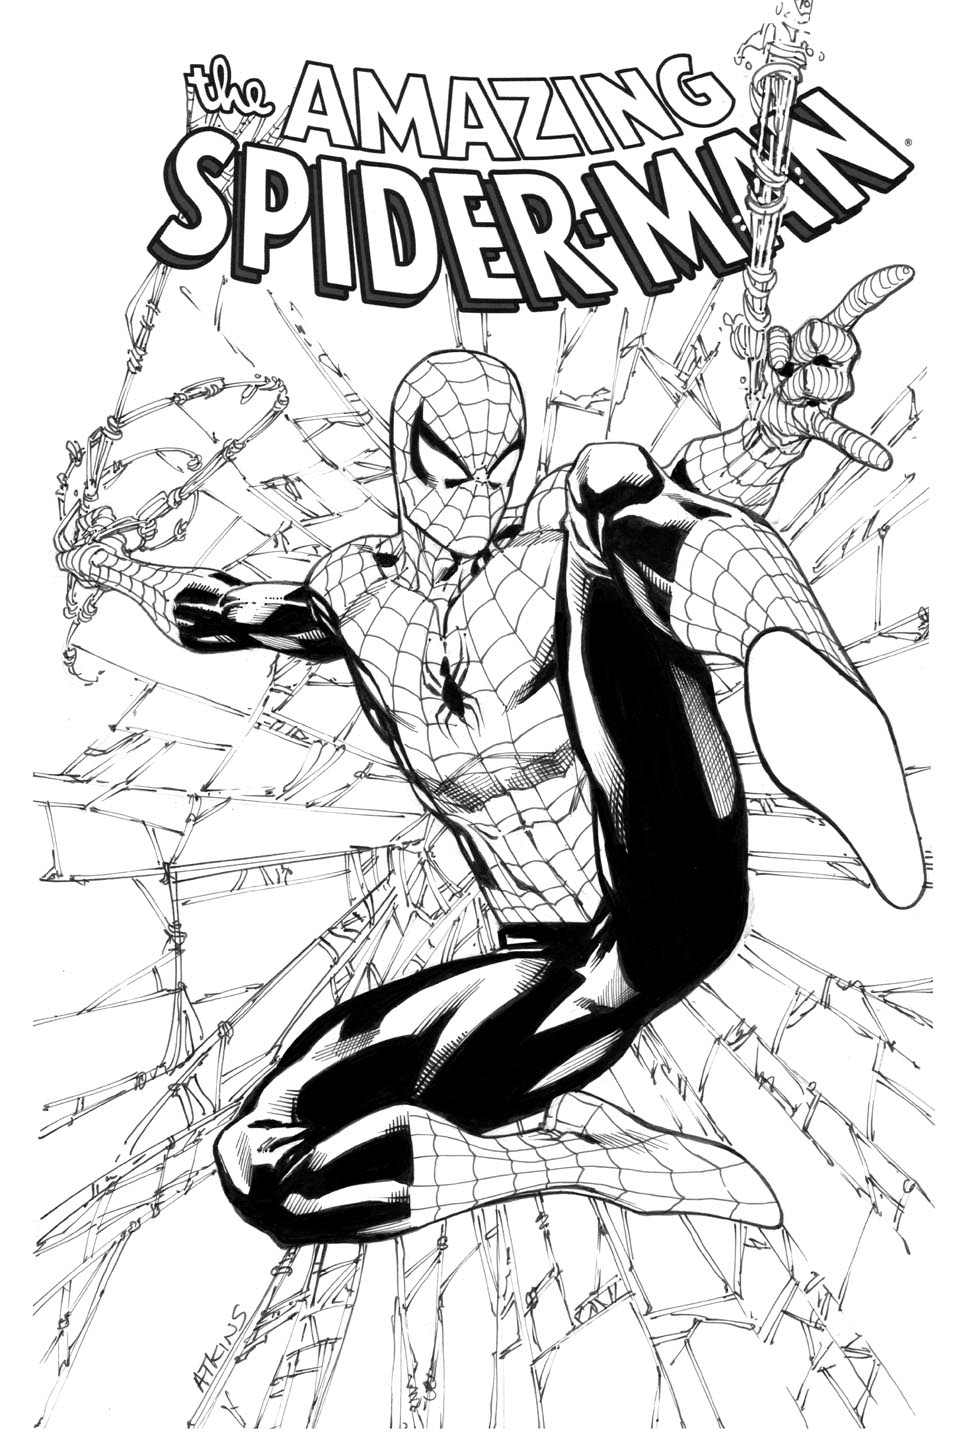 Robert Atkins Art: Spider-Man 1st grade...